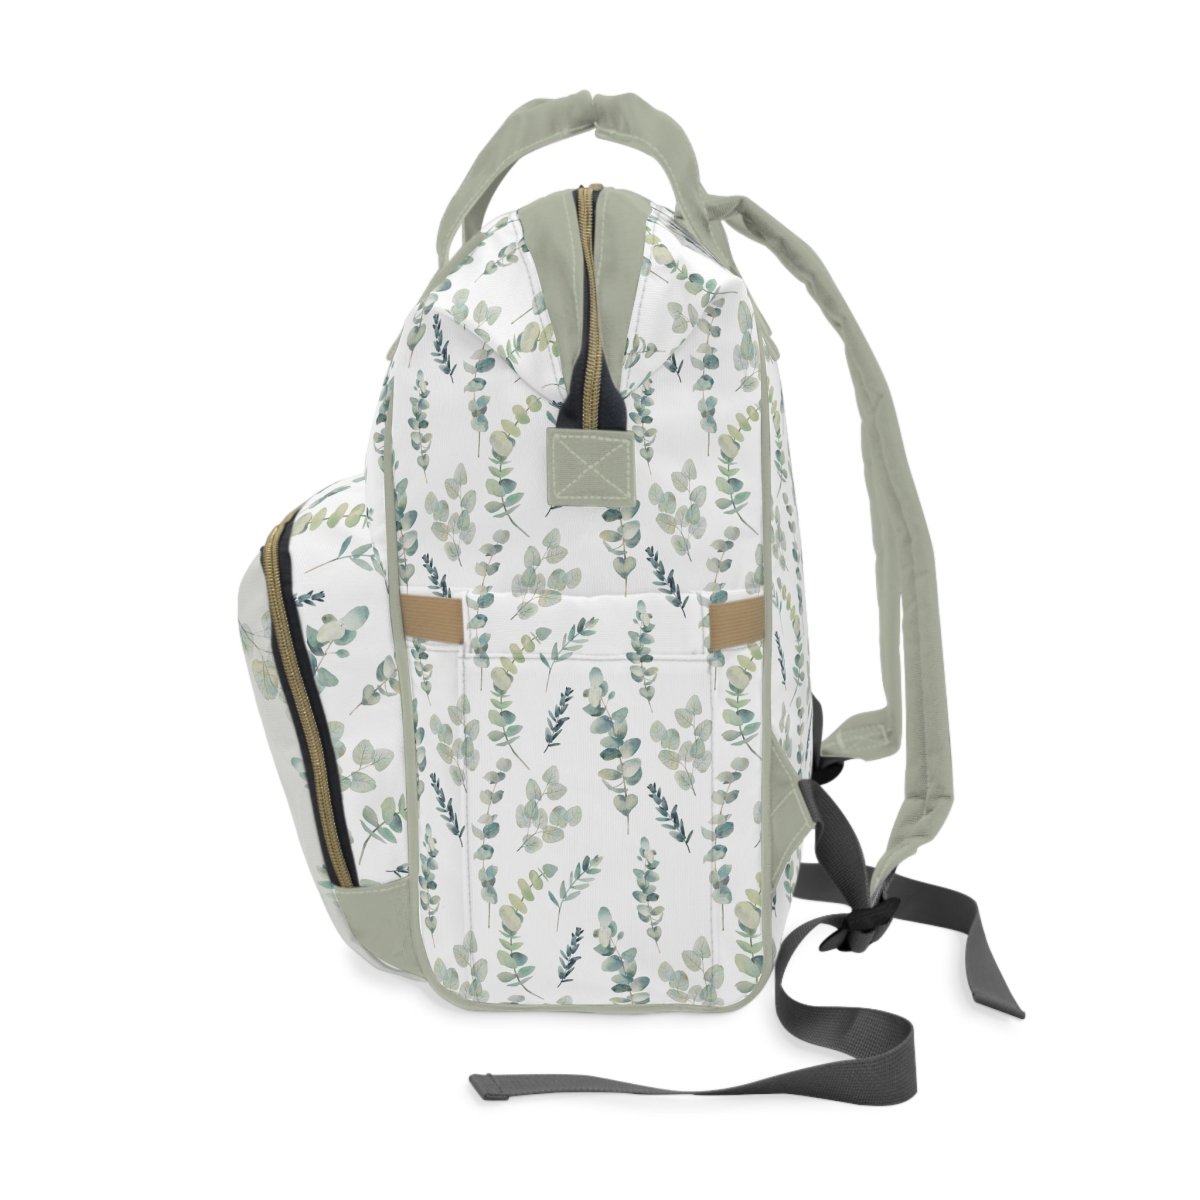 Going Green Personalized Backpack Diaper Bag - gender_boy, gender_girl, gender_neutral